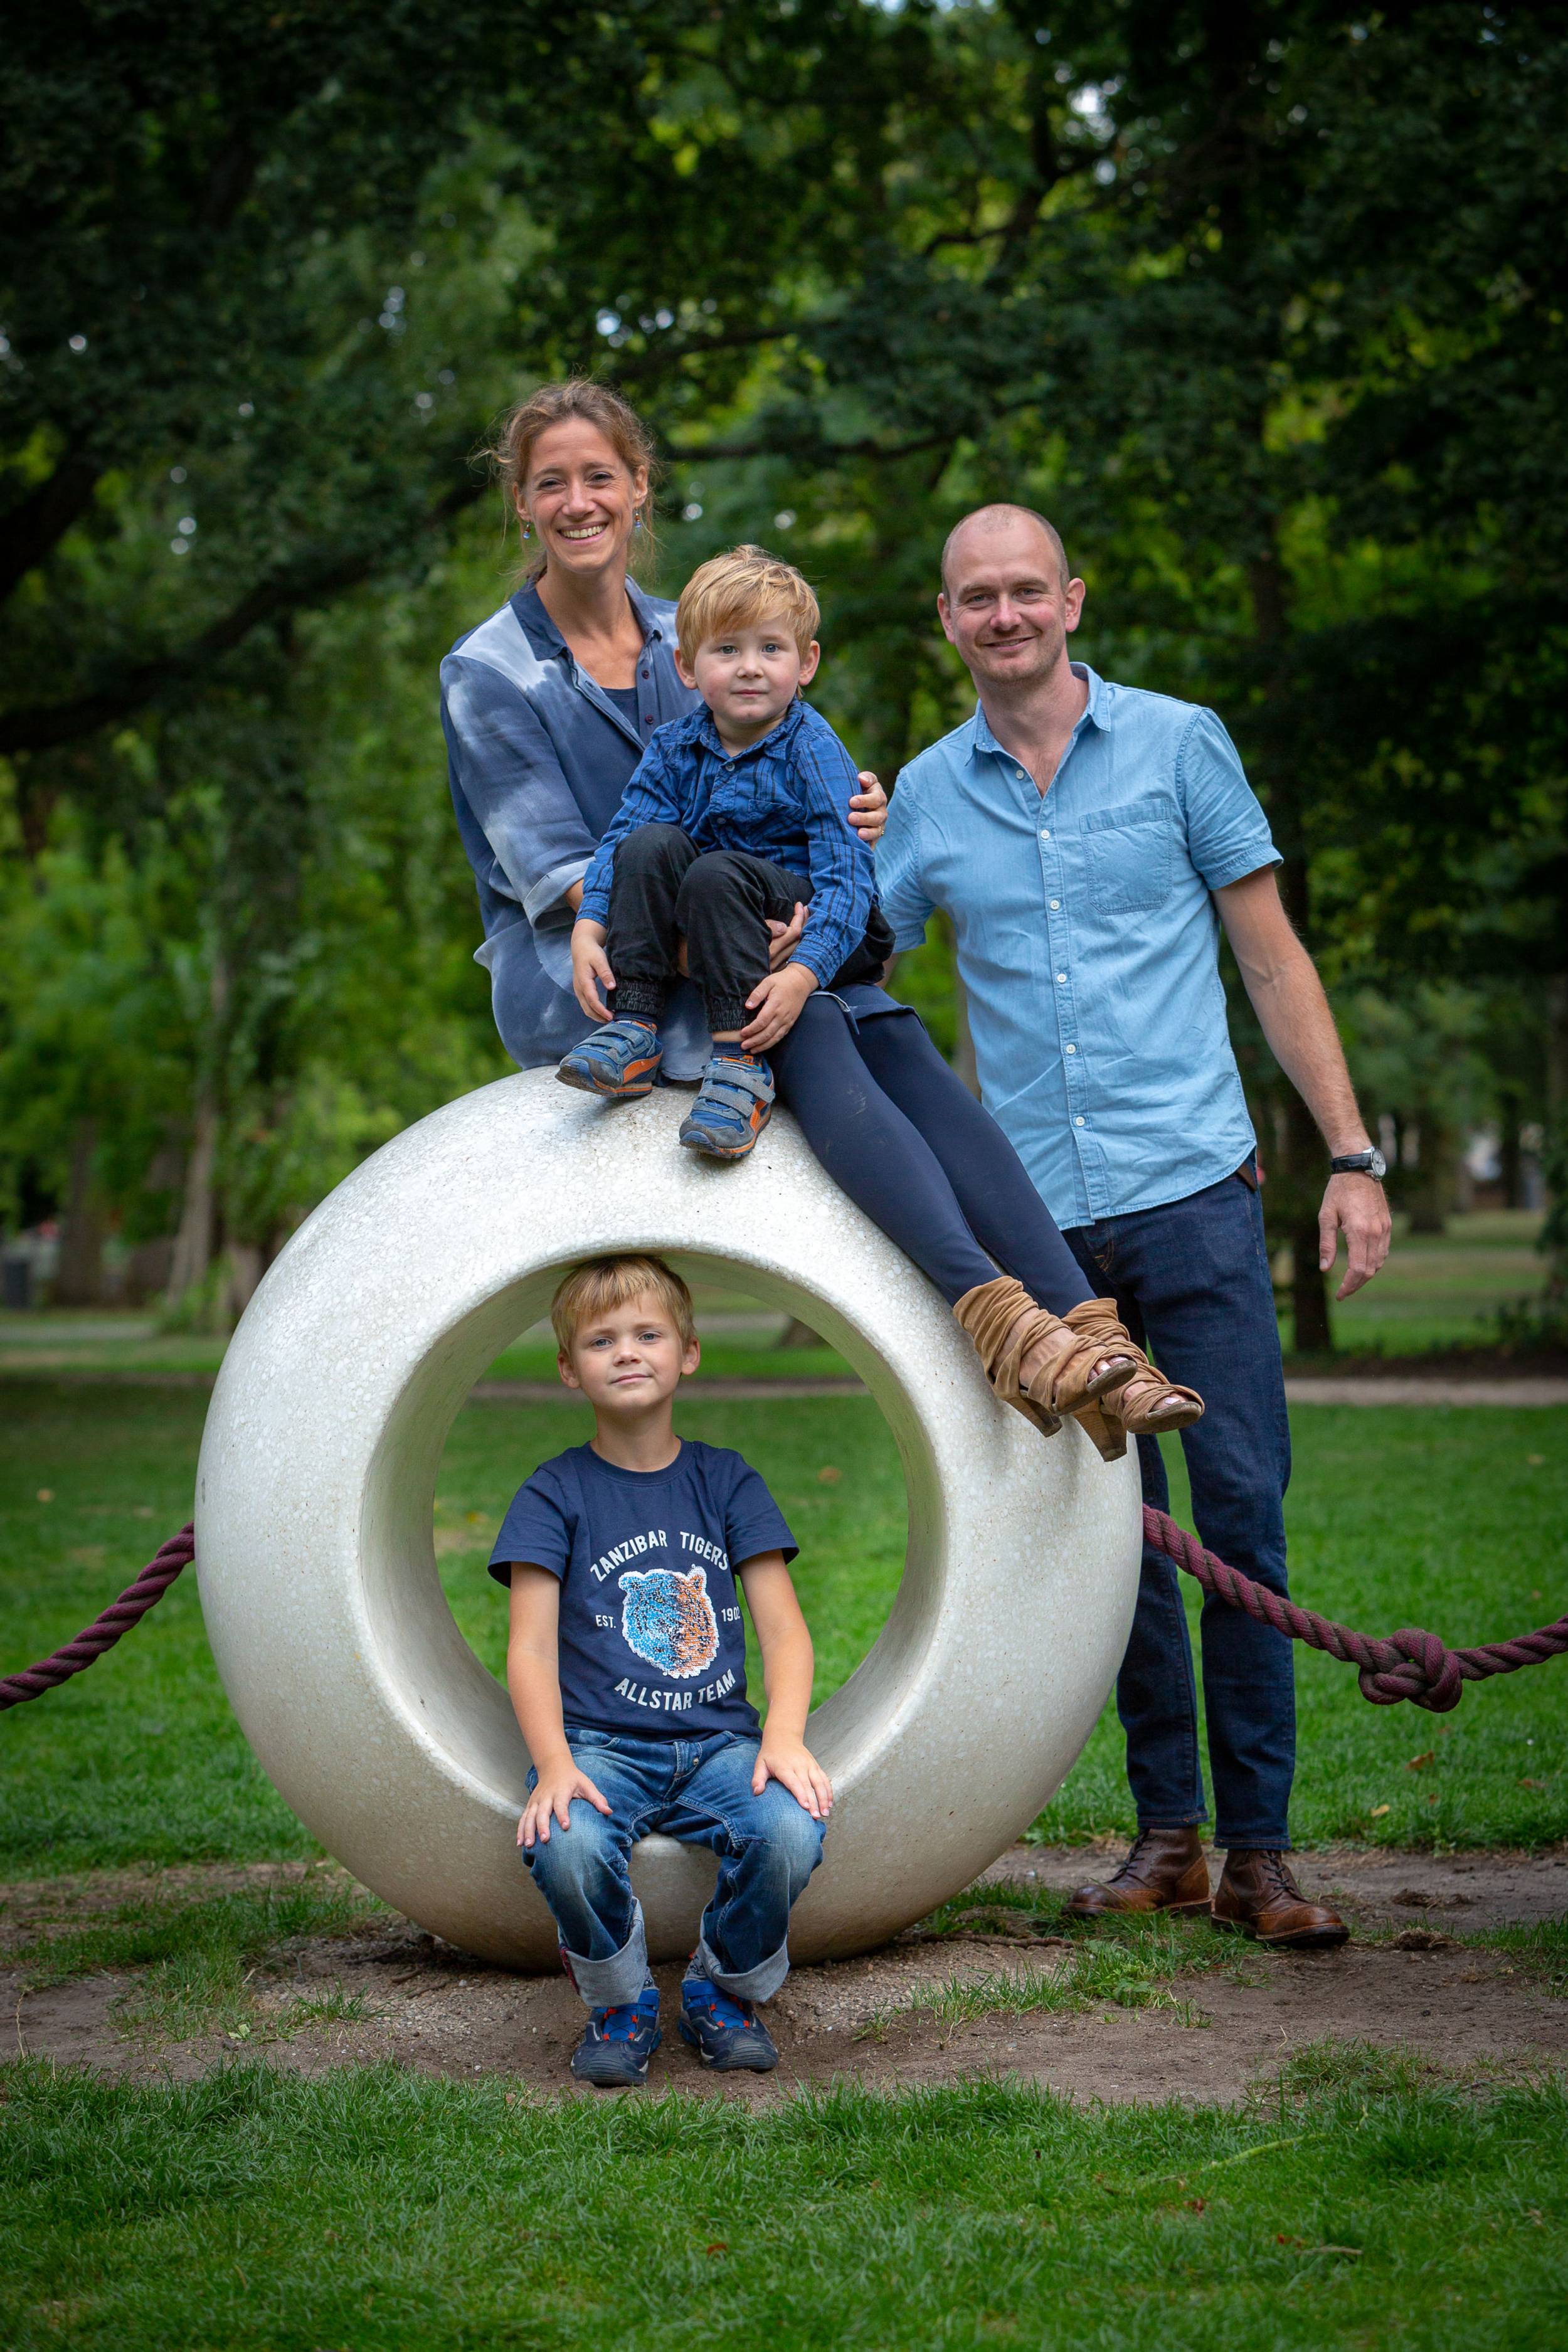 Happix-fotograaf-Henk-Naaldwijk-Familiefotografie-038_kR2K3RtPc.jpg